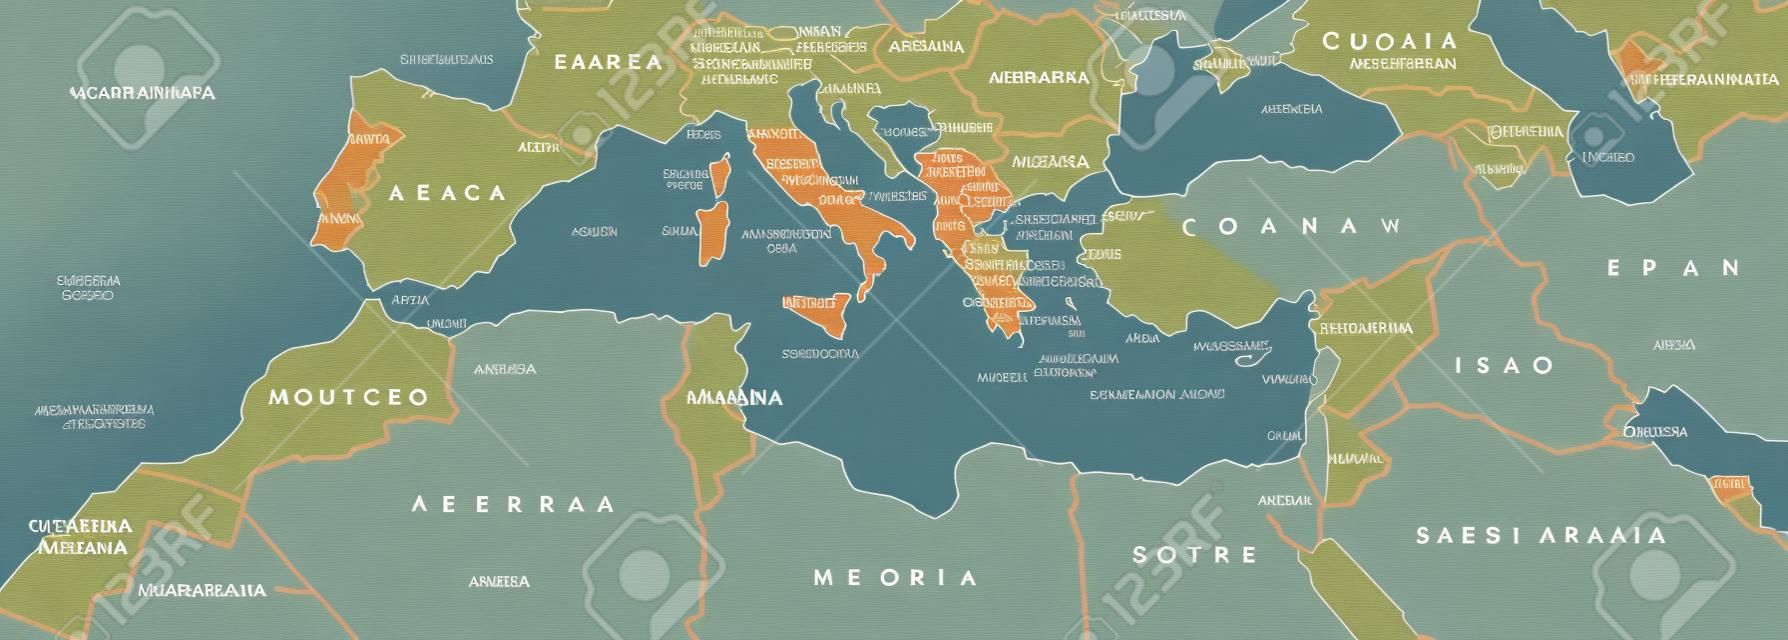 Средиземноморский бассейн политическая карта. Средиземноморский регион, а также Mediterranea. Земли вокруг Средиземного моря. Южная Европа, Северная Африка и Ближний Восток. Серый иллюстрация с английской маркировкой. Вектор.